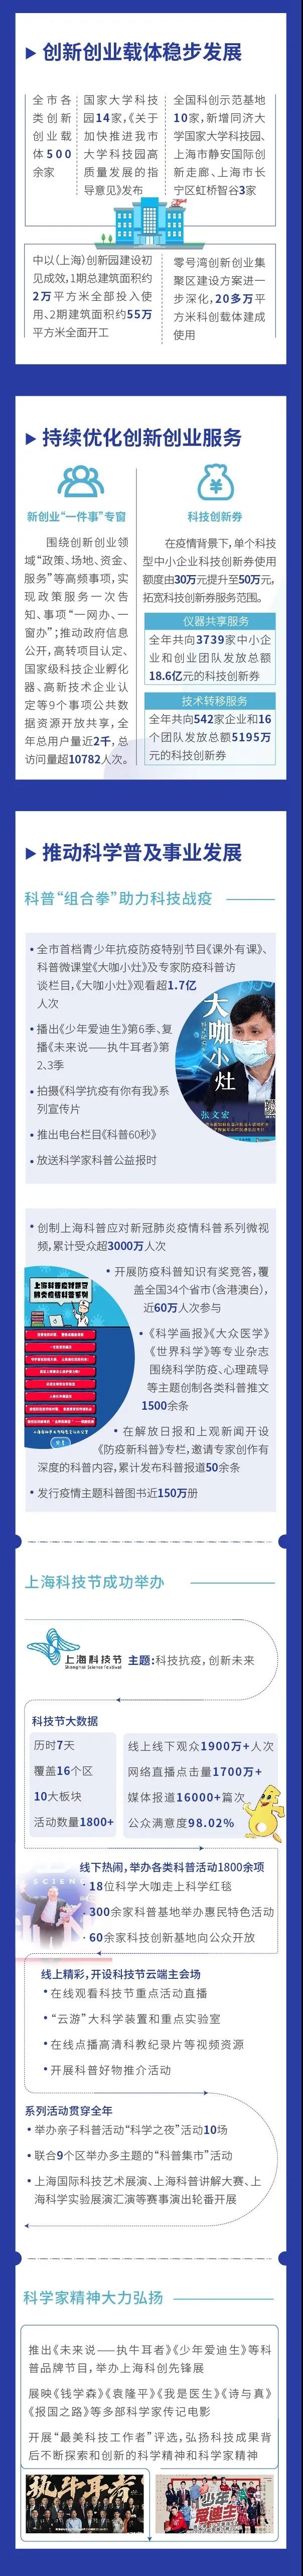 图看《2020上海科技进步报告》④4.jpg